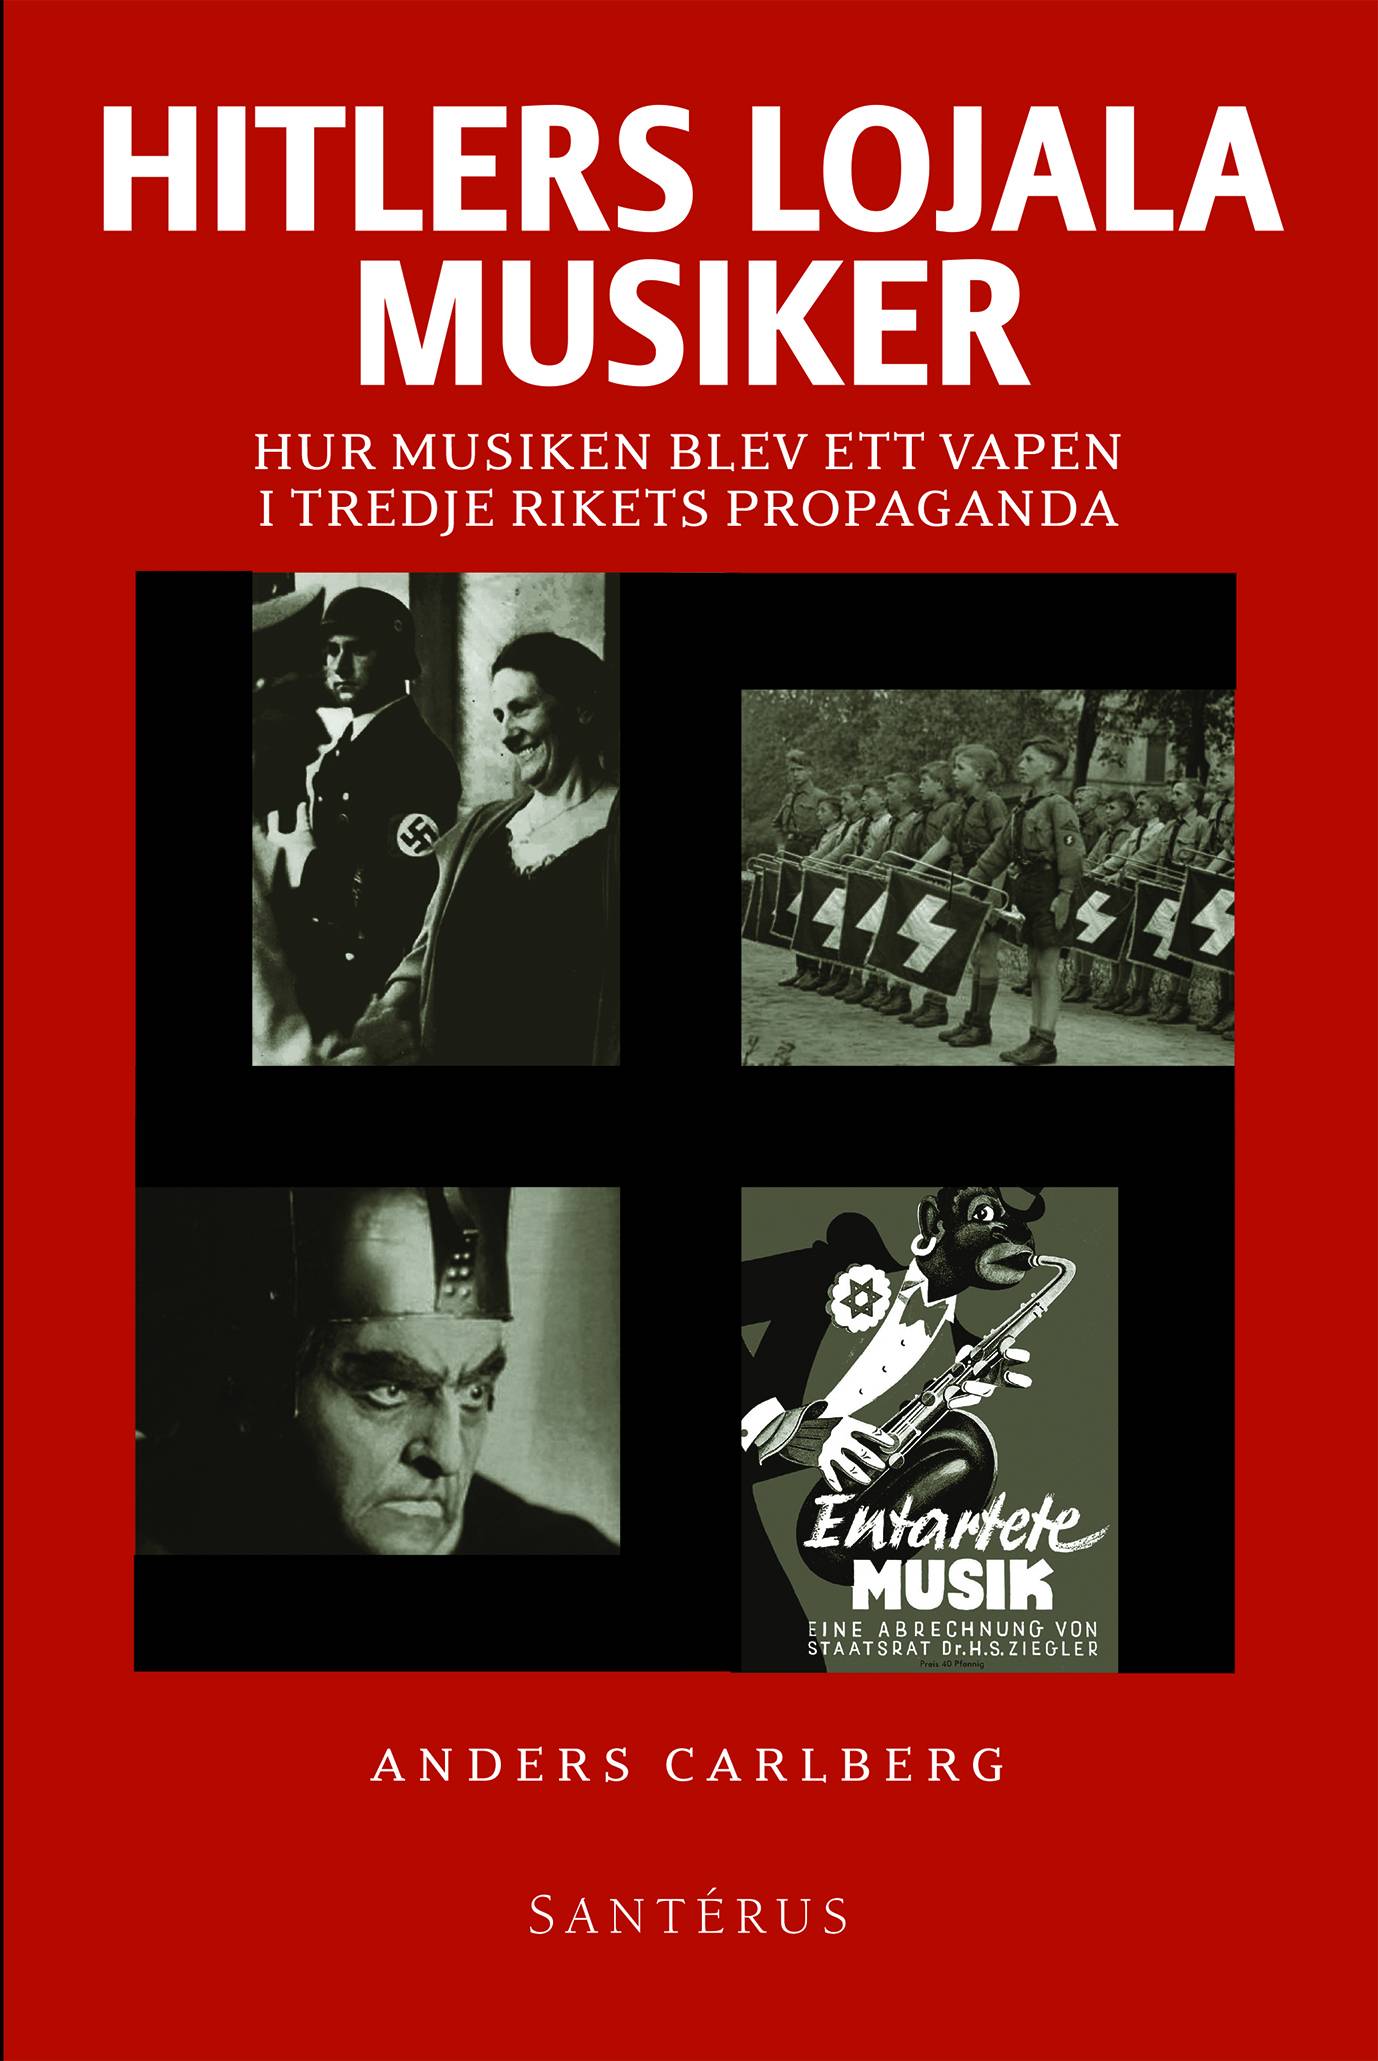 Hitlers lojala musiker : hur musiken blev ett vapen i Tredje rikets propaga